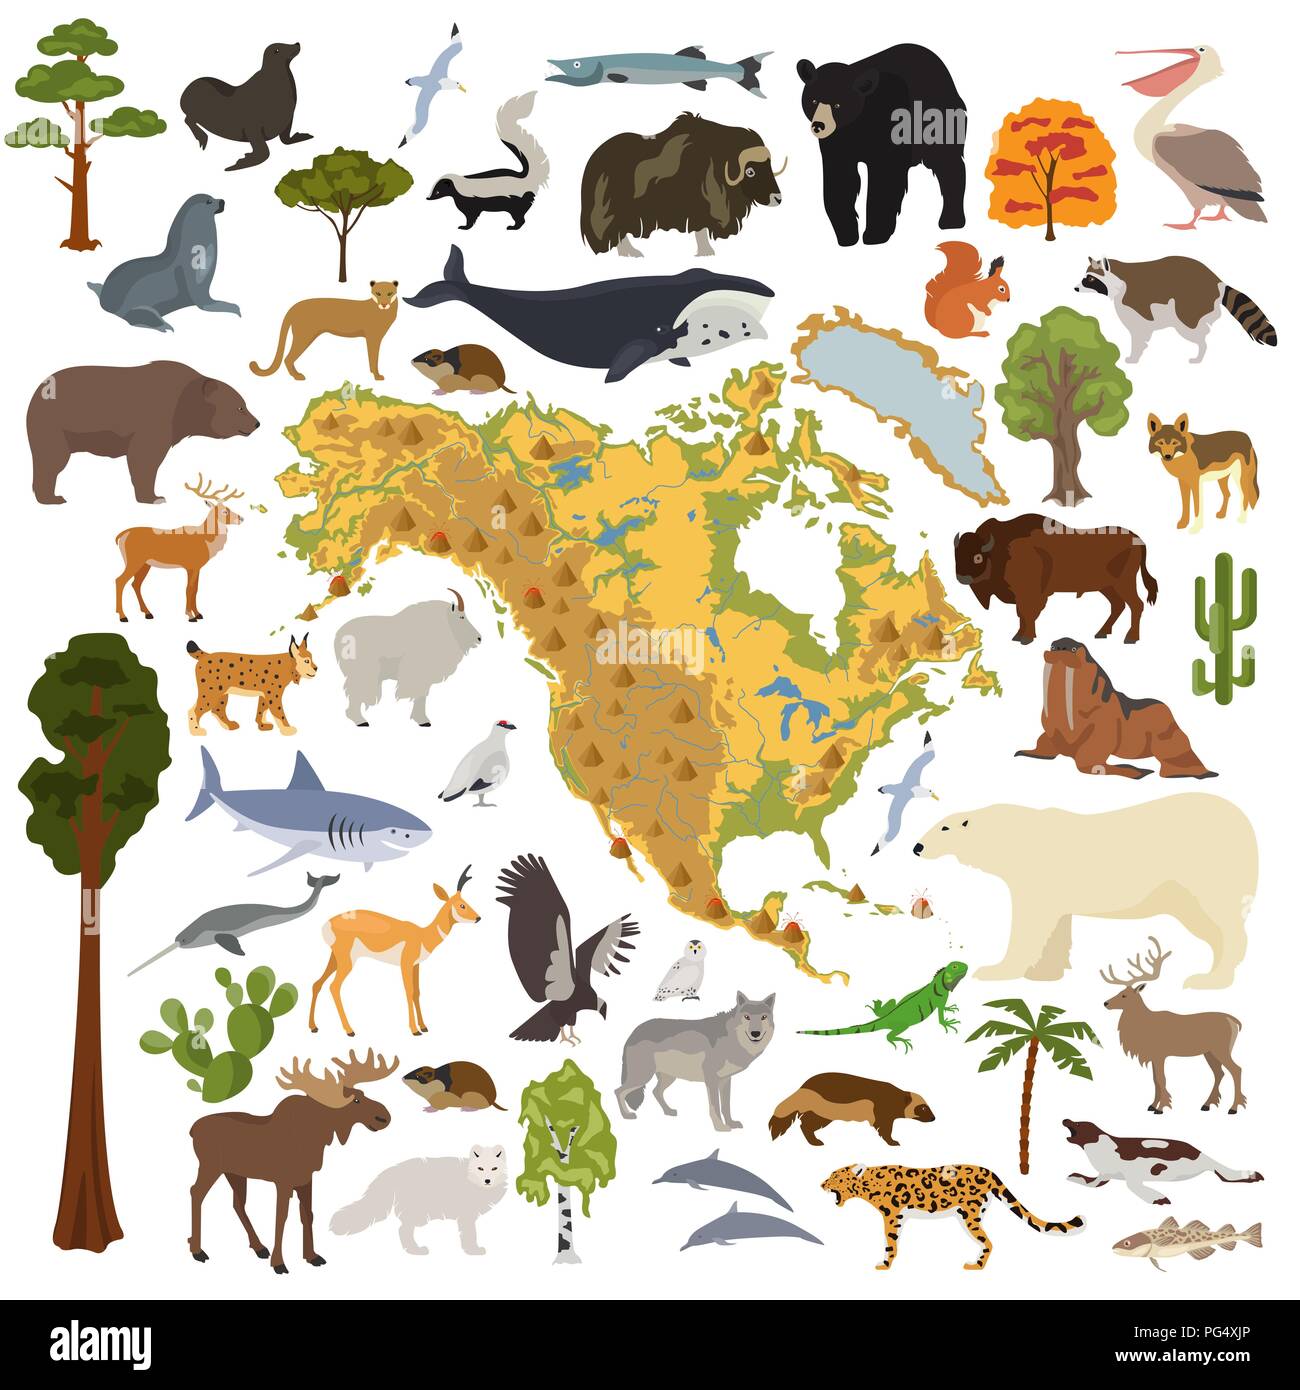 Nordamerika Flora und Fauna Karte, flache Elemente. Tiere, Vögel und Sea Life big eingestellt. Ihre Geographie Infografiken Sammlung aufzubauen. Vektor illustrati Stock Vektor